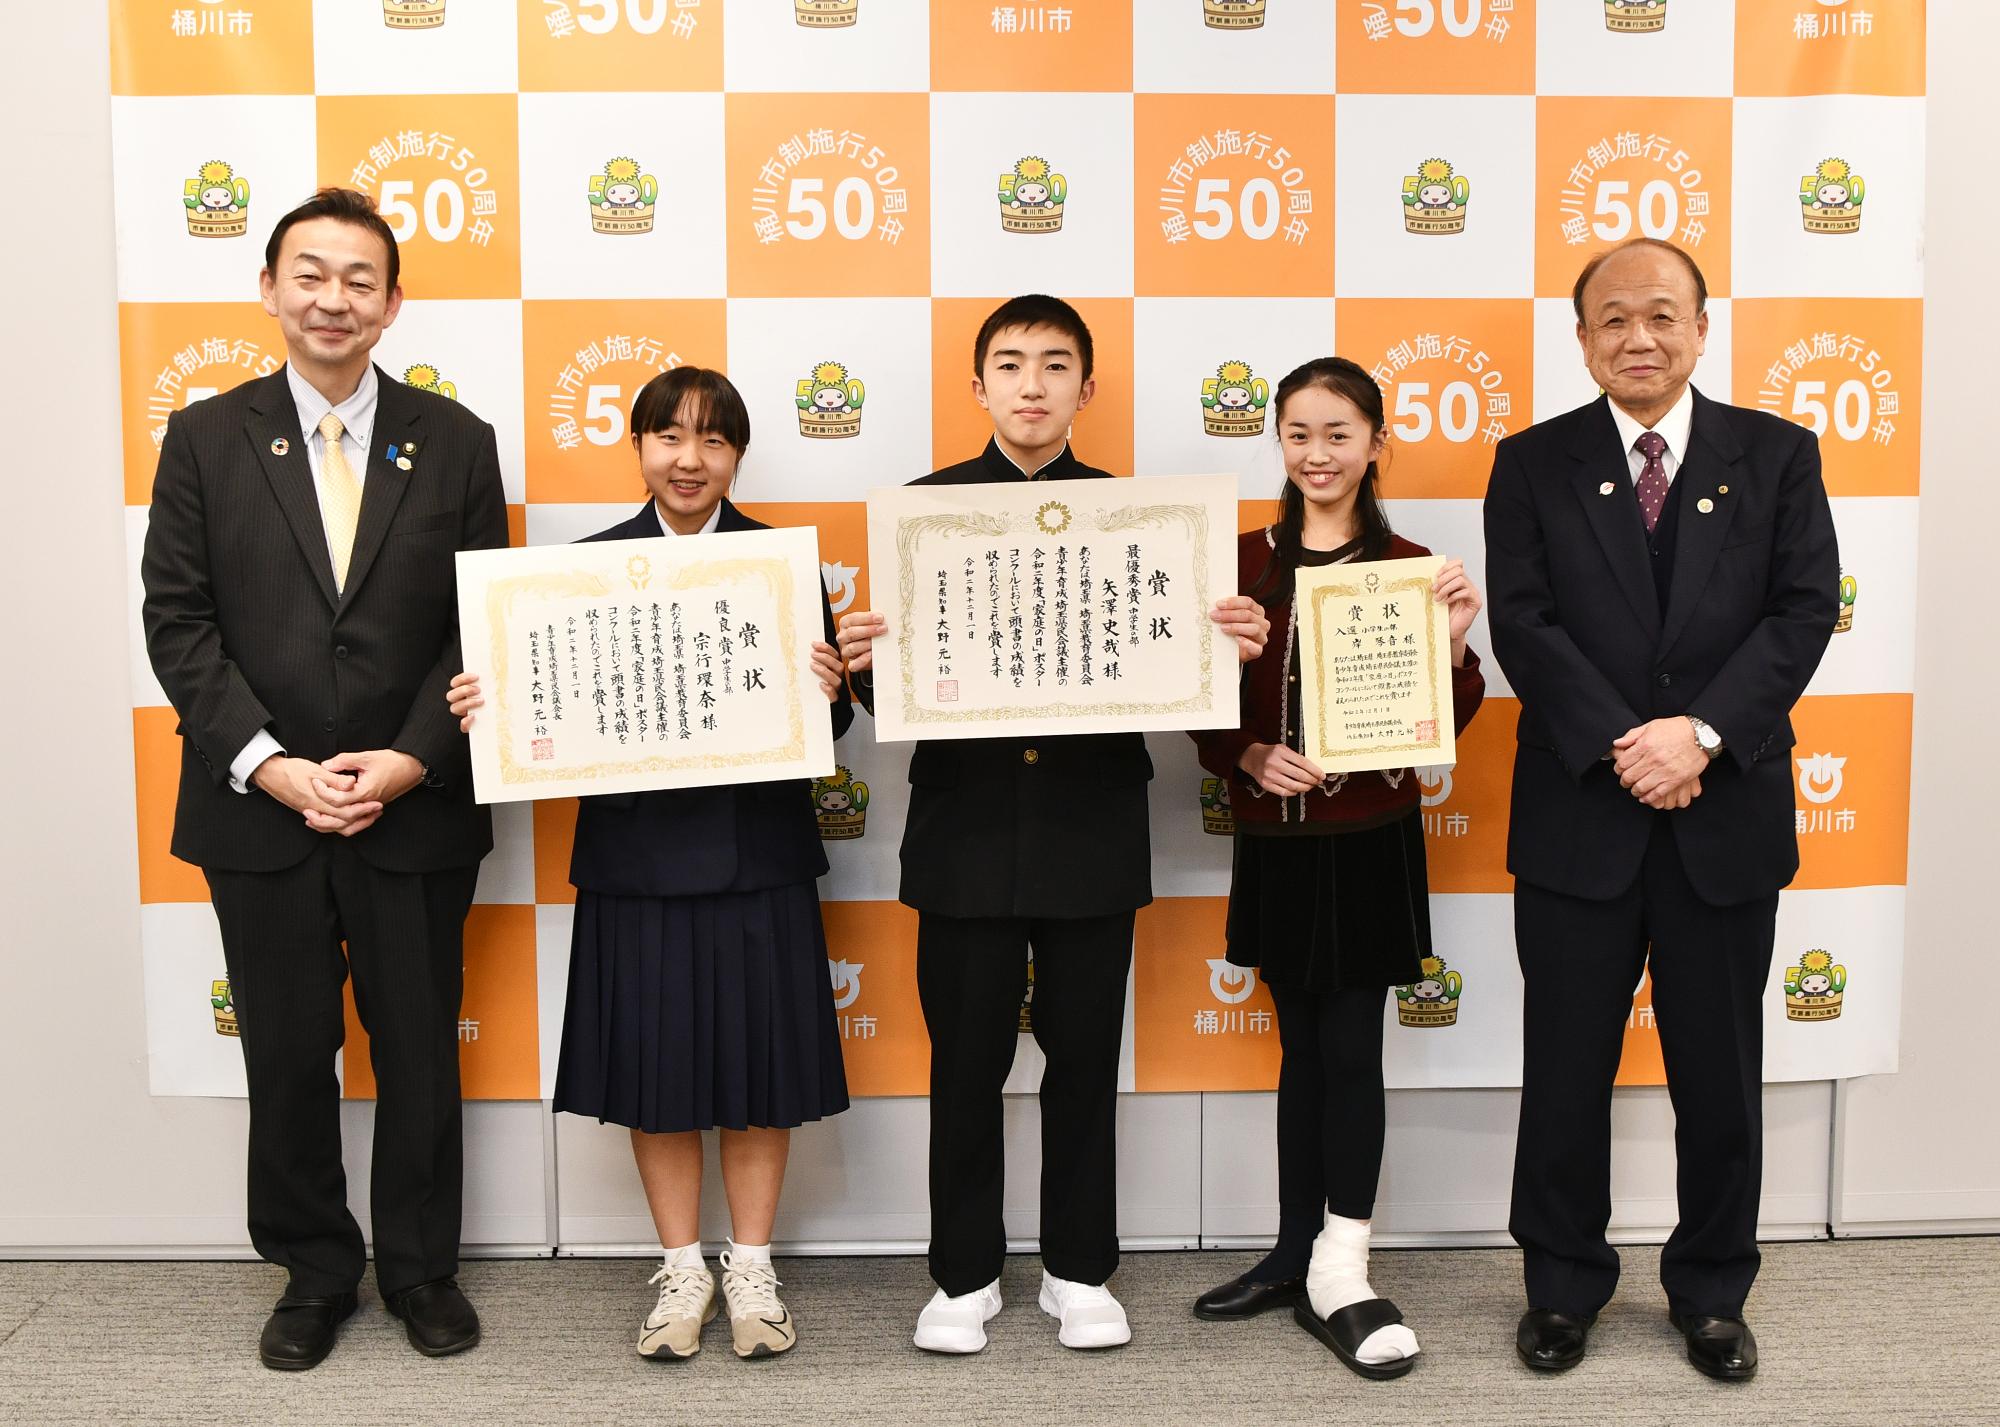 「家庭の日」ポスターコンクールで受賞された児童・生徒の3人と小野市長、岩田教育長の集合写真